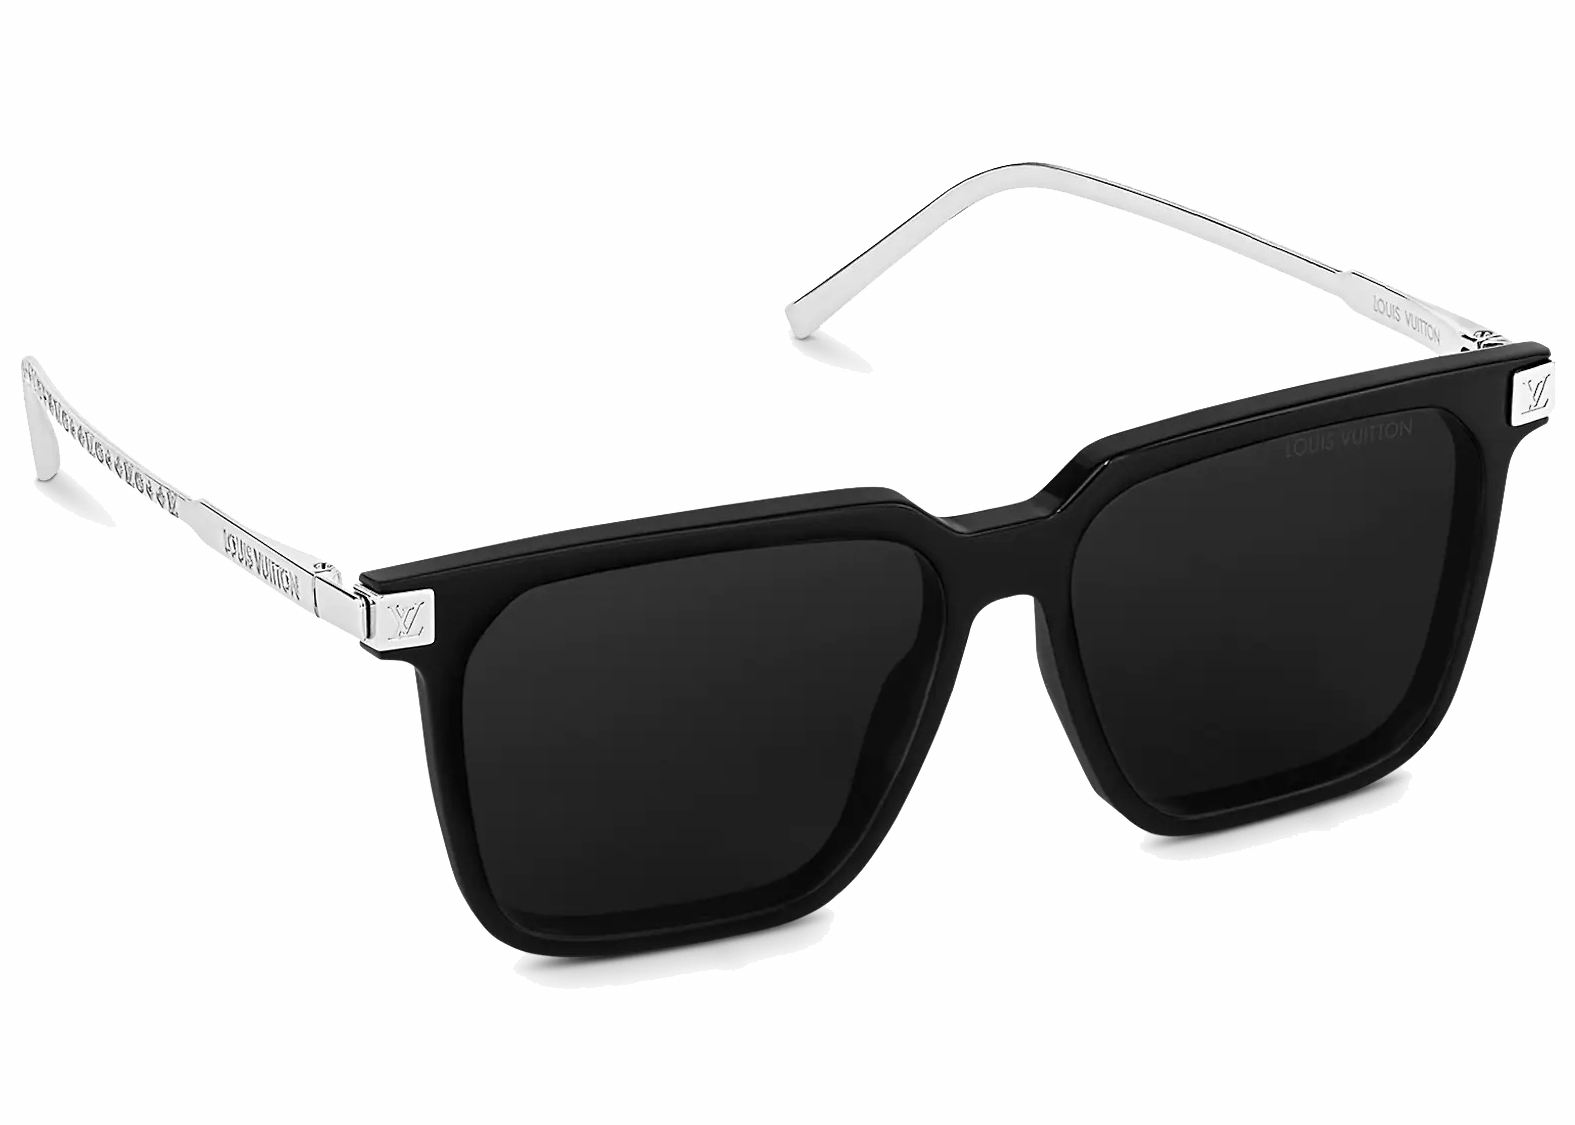 Sunglasses Collection for Men  LOUIS VUITTON